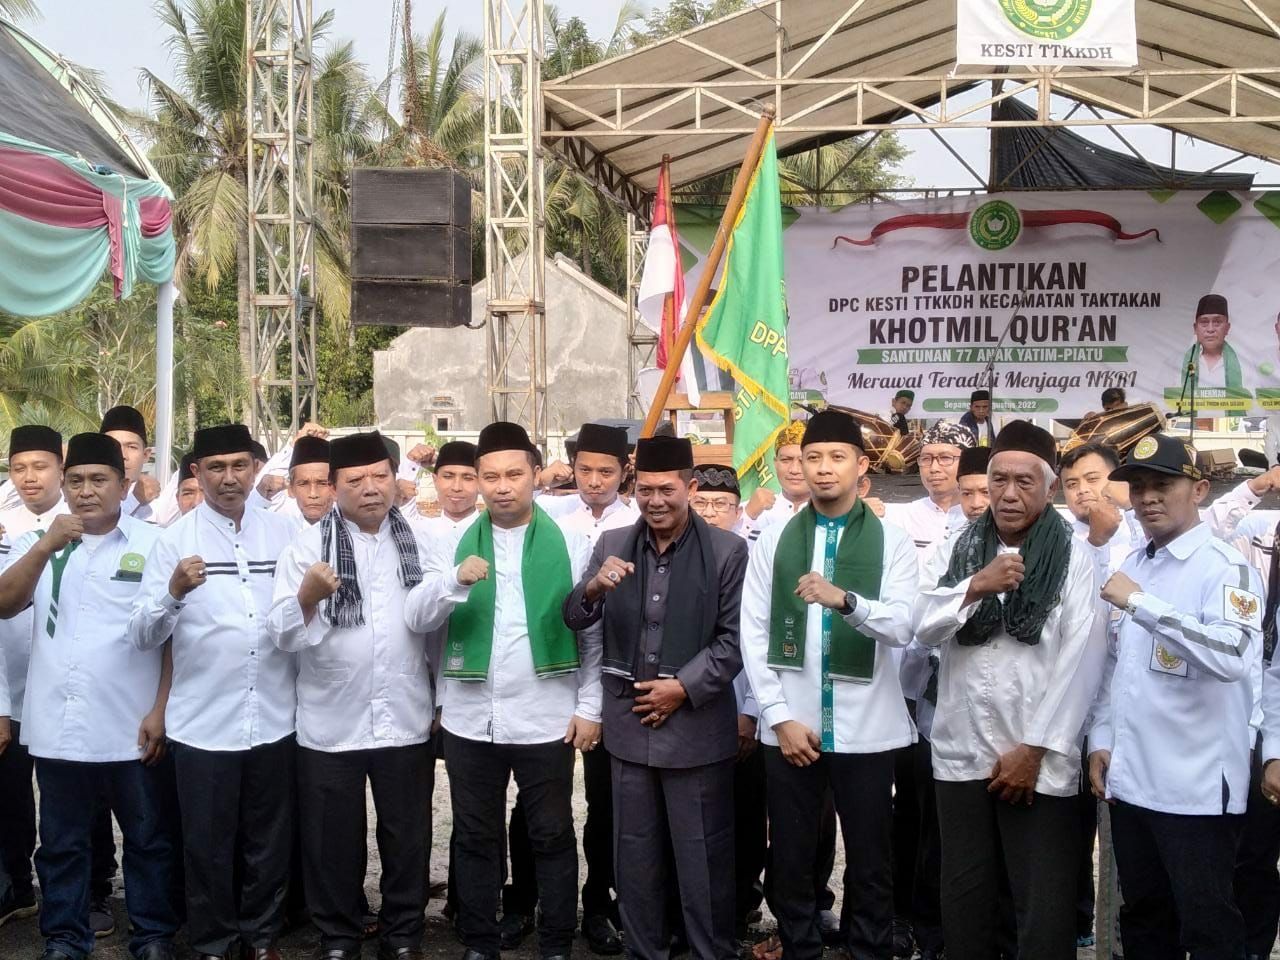 Walikota Serang Menghadiri Pelantikan DPC KESTI TTKKDH Kecamatan Taktakan